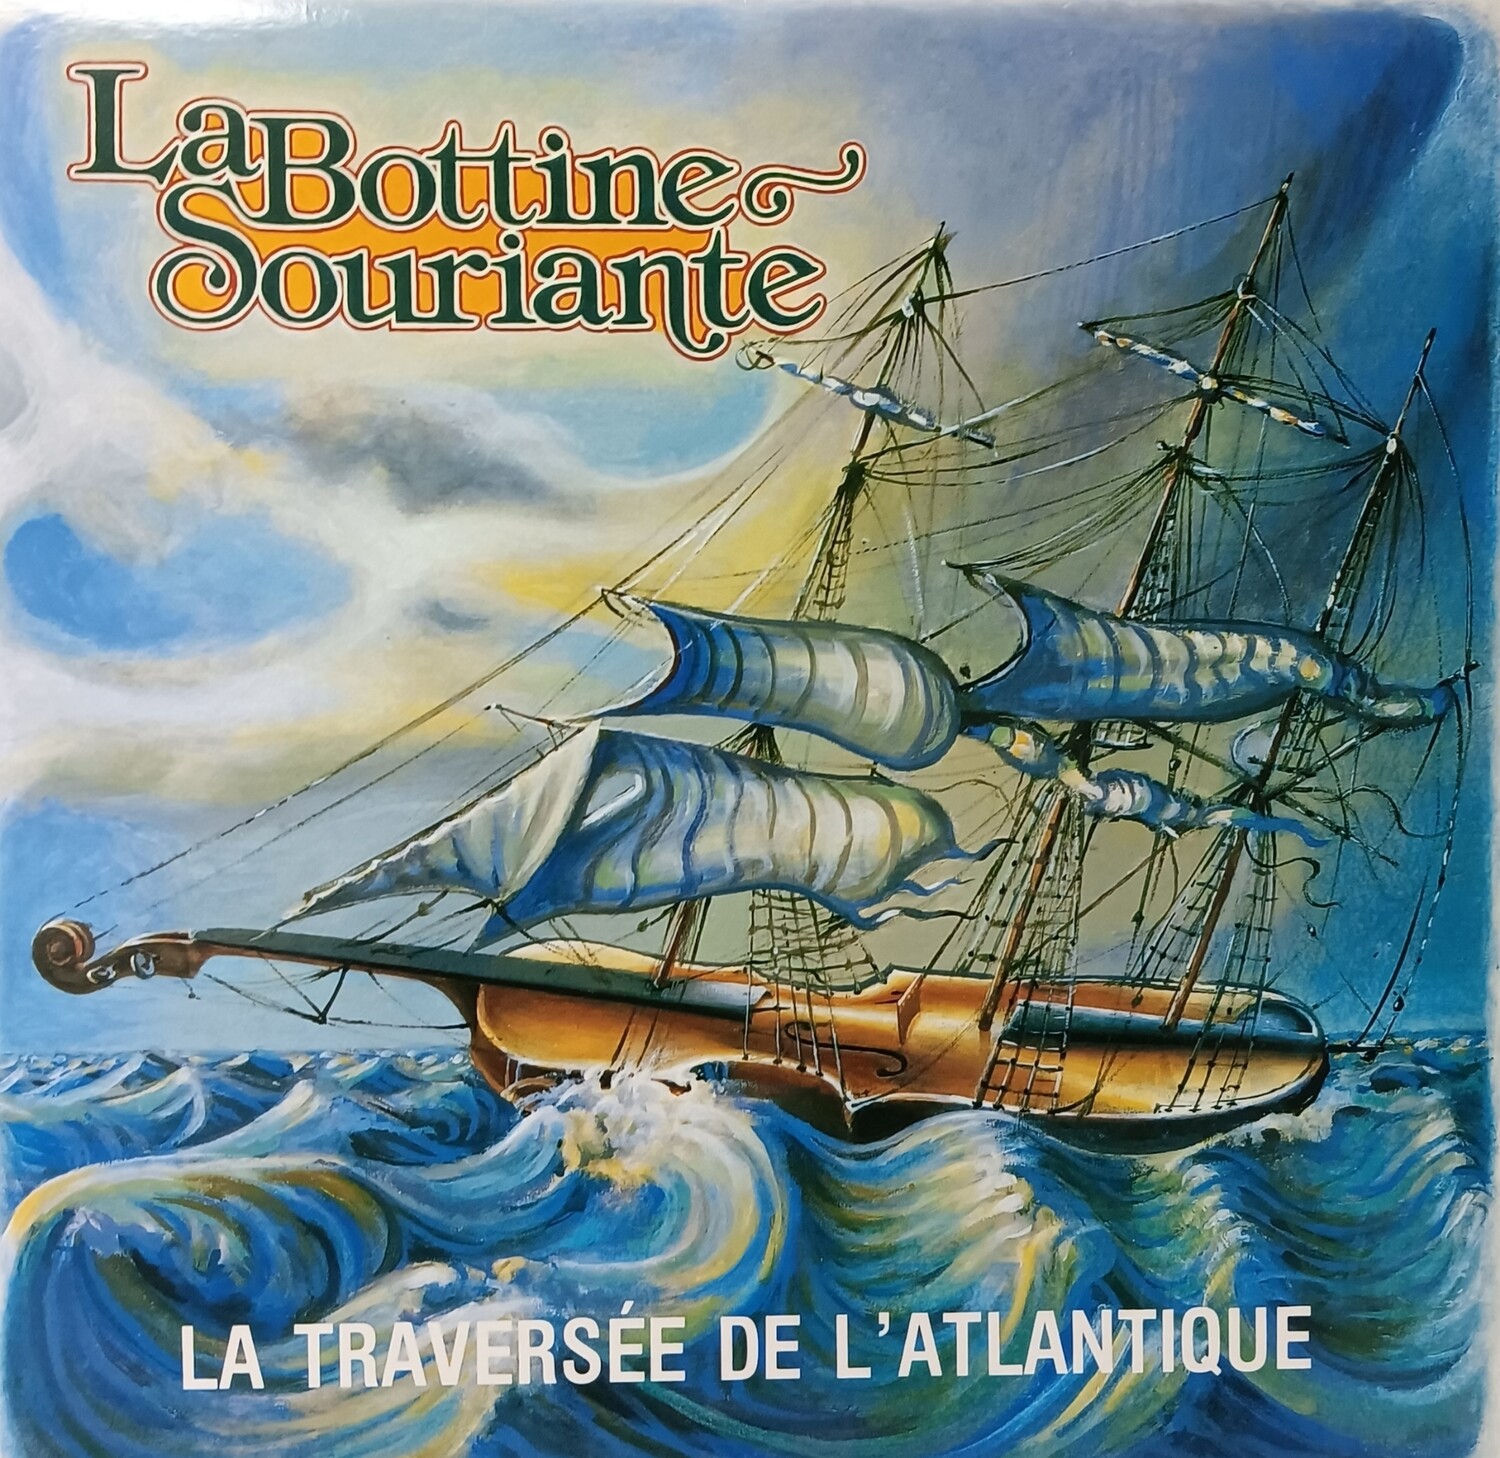 La Bottine Souriante - La traversée de l'Atlantique